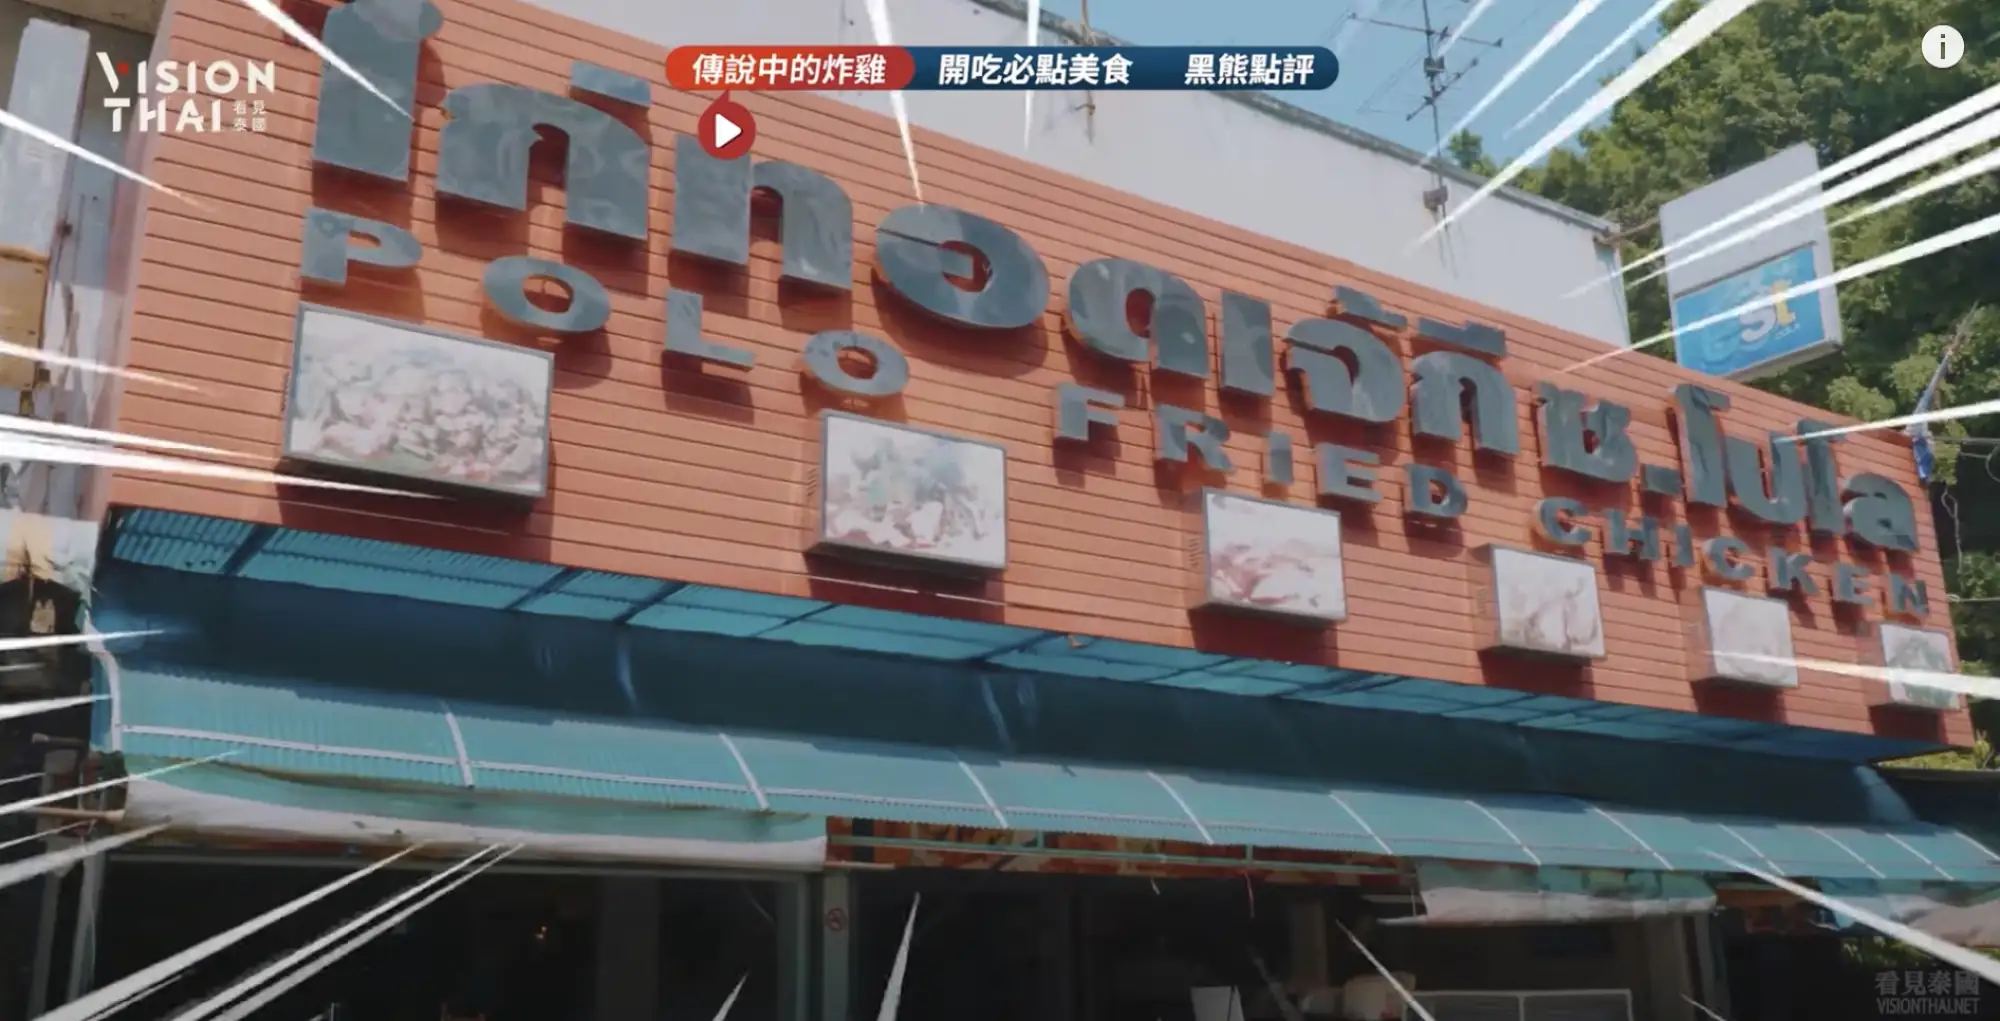 泰國人都認證的國民炸雞店——"Polo Fried Chicken"炸雞店，現在已有50多年歷史（黑熊V泰國影片截圖）